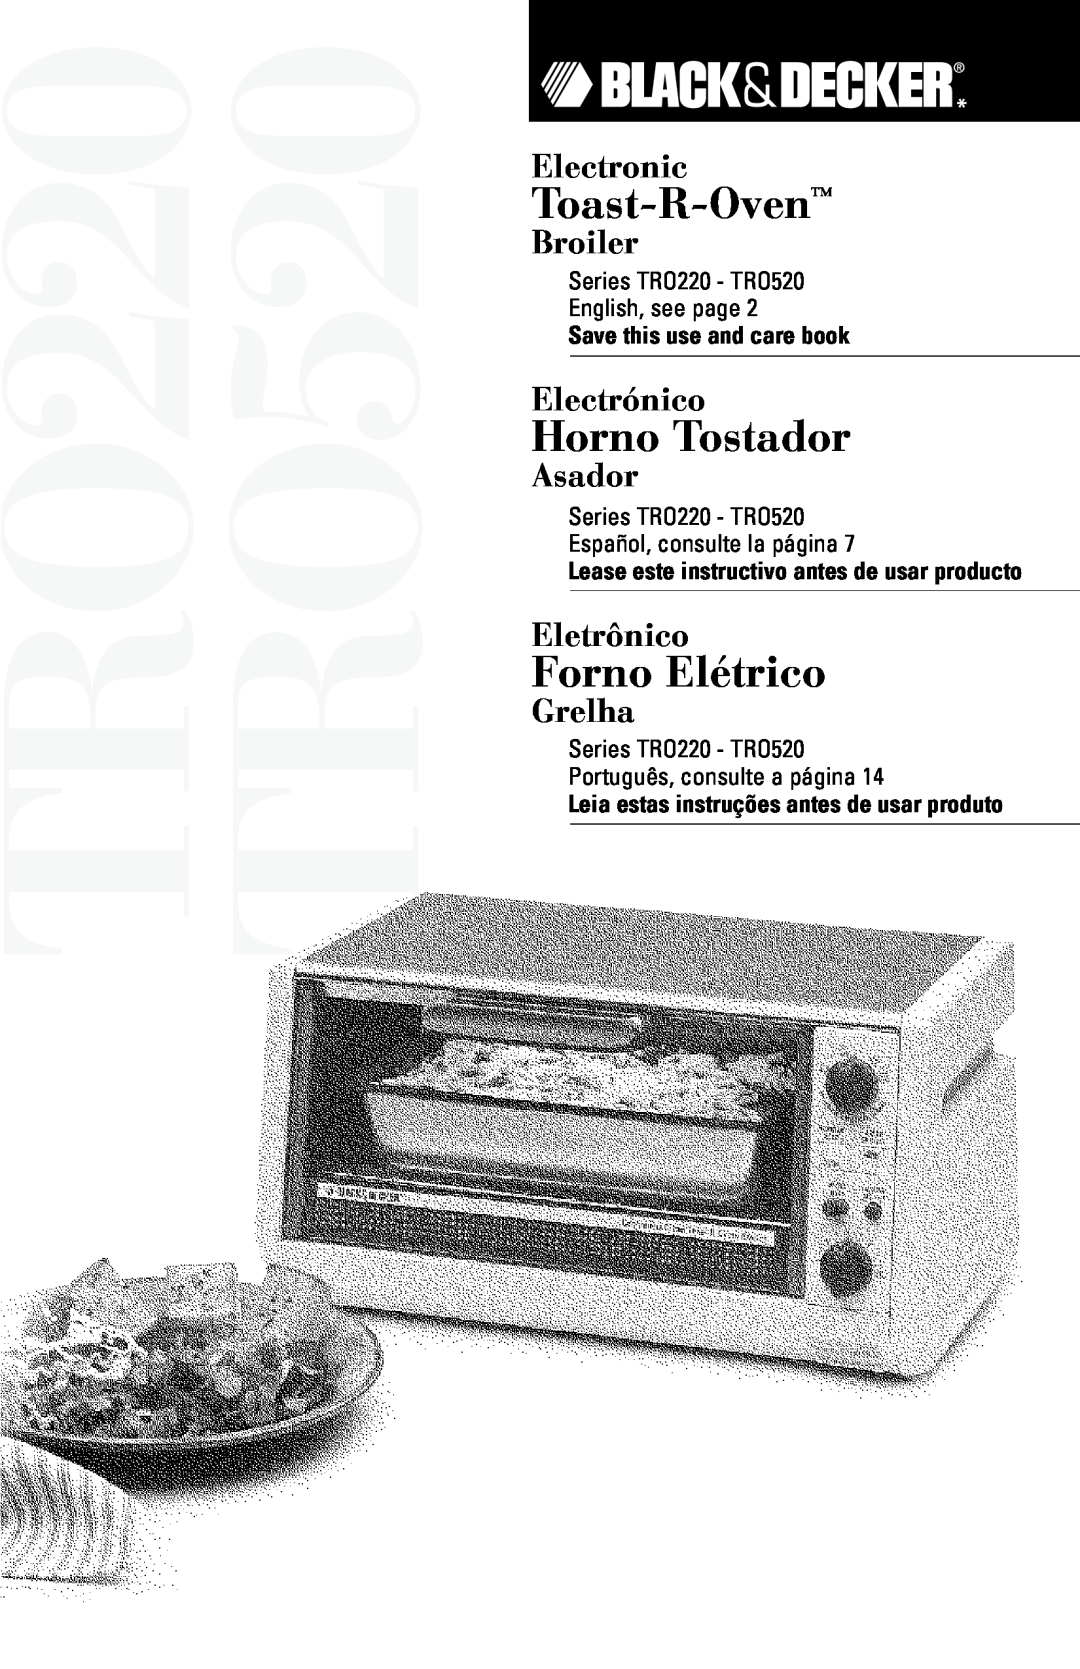 Black & Decker manual TRO220 TRO520, Toast-R-Oven, Horno Tostador, Forno Elétrico, Electronic, Broiler, Electrónico 